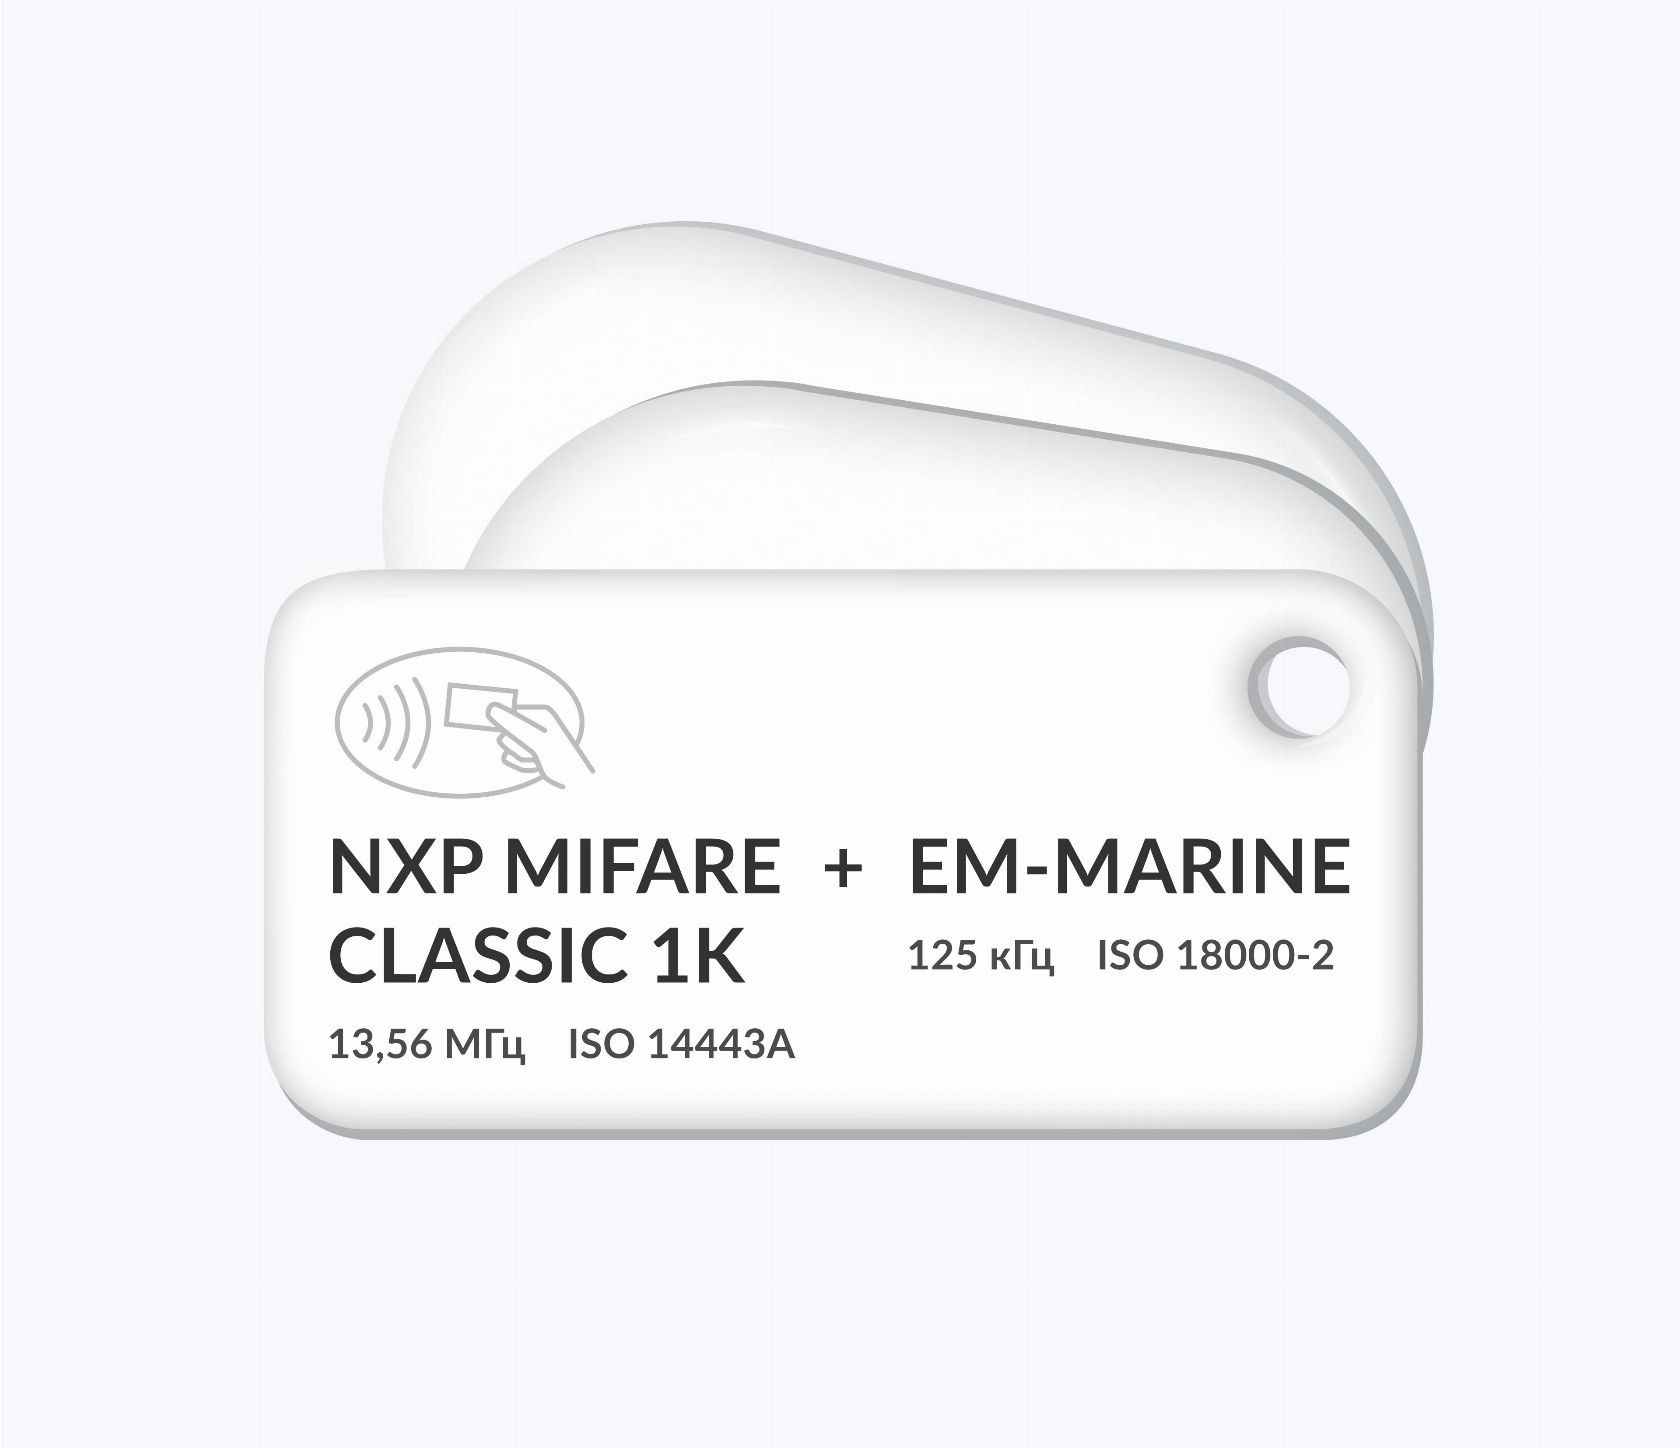 Дуальные RFID-брелоки NEOKEY® с двумя чипами NXP MIFARE Classic 1k + EM-Marine и вашим логотипом